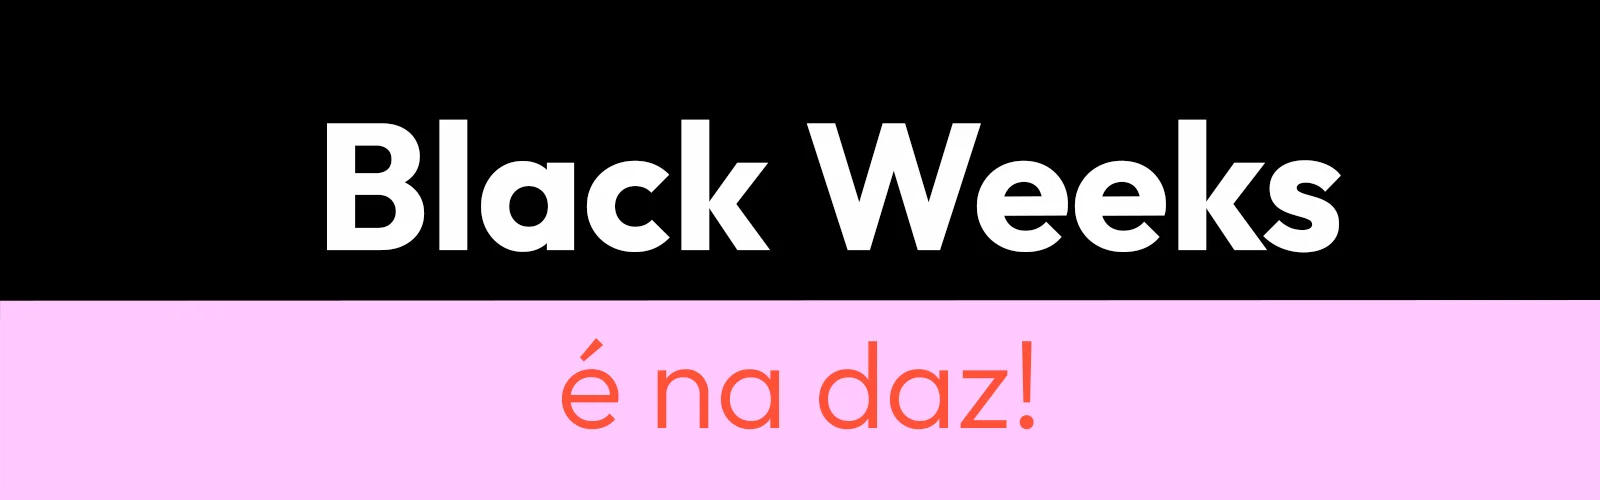 texto anunciando promoção de black friday na Daz com fundo bicolor preto e roxo.